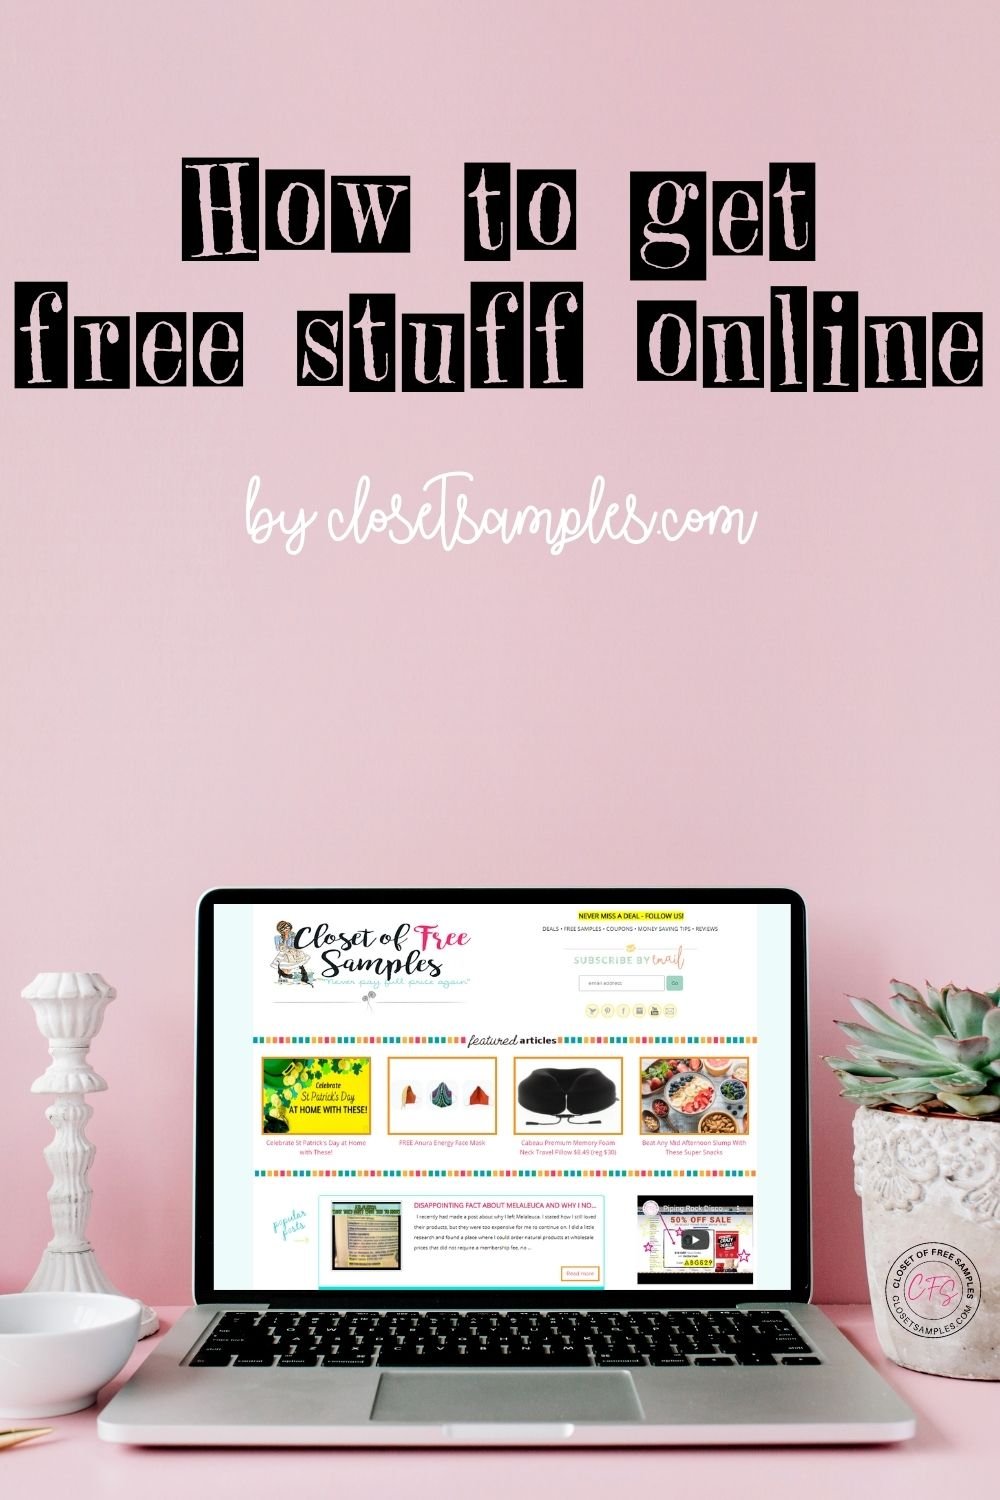 How to get free stuff online closetsamples Pinterest